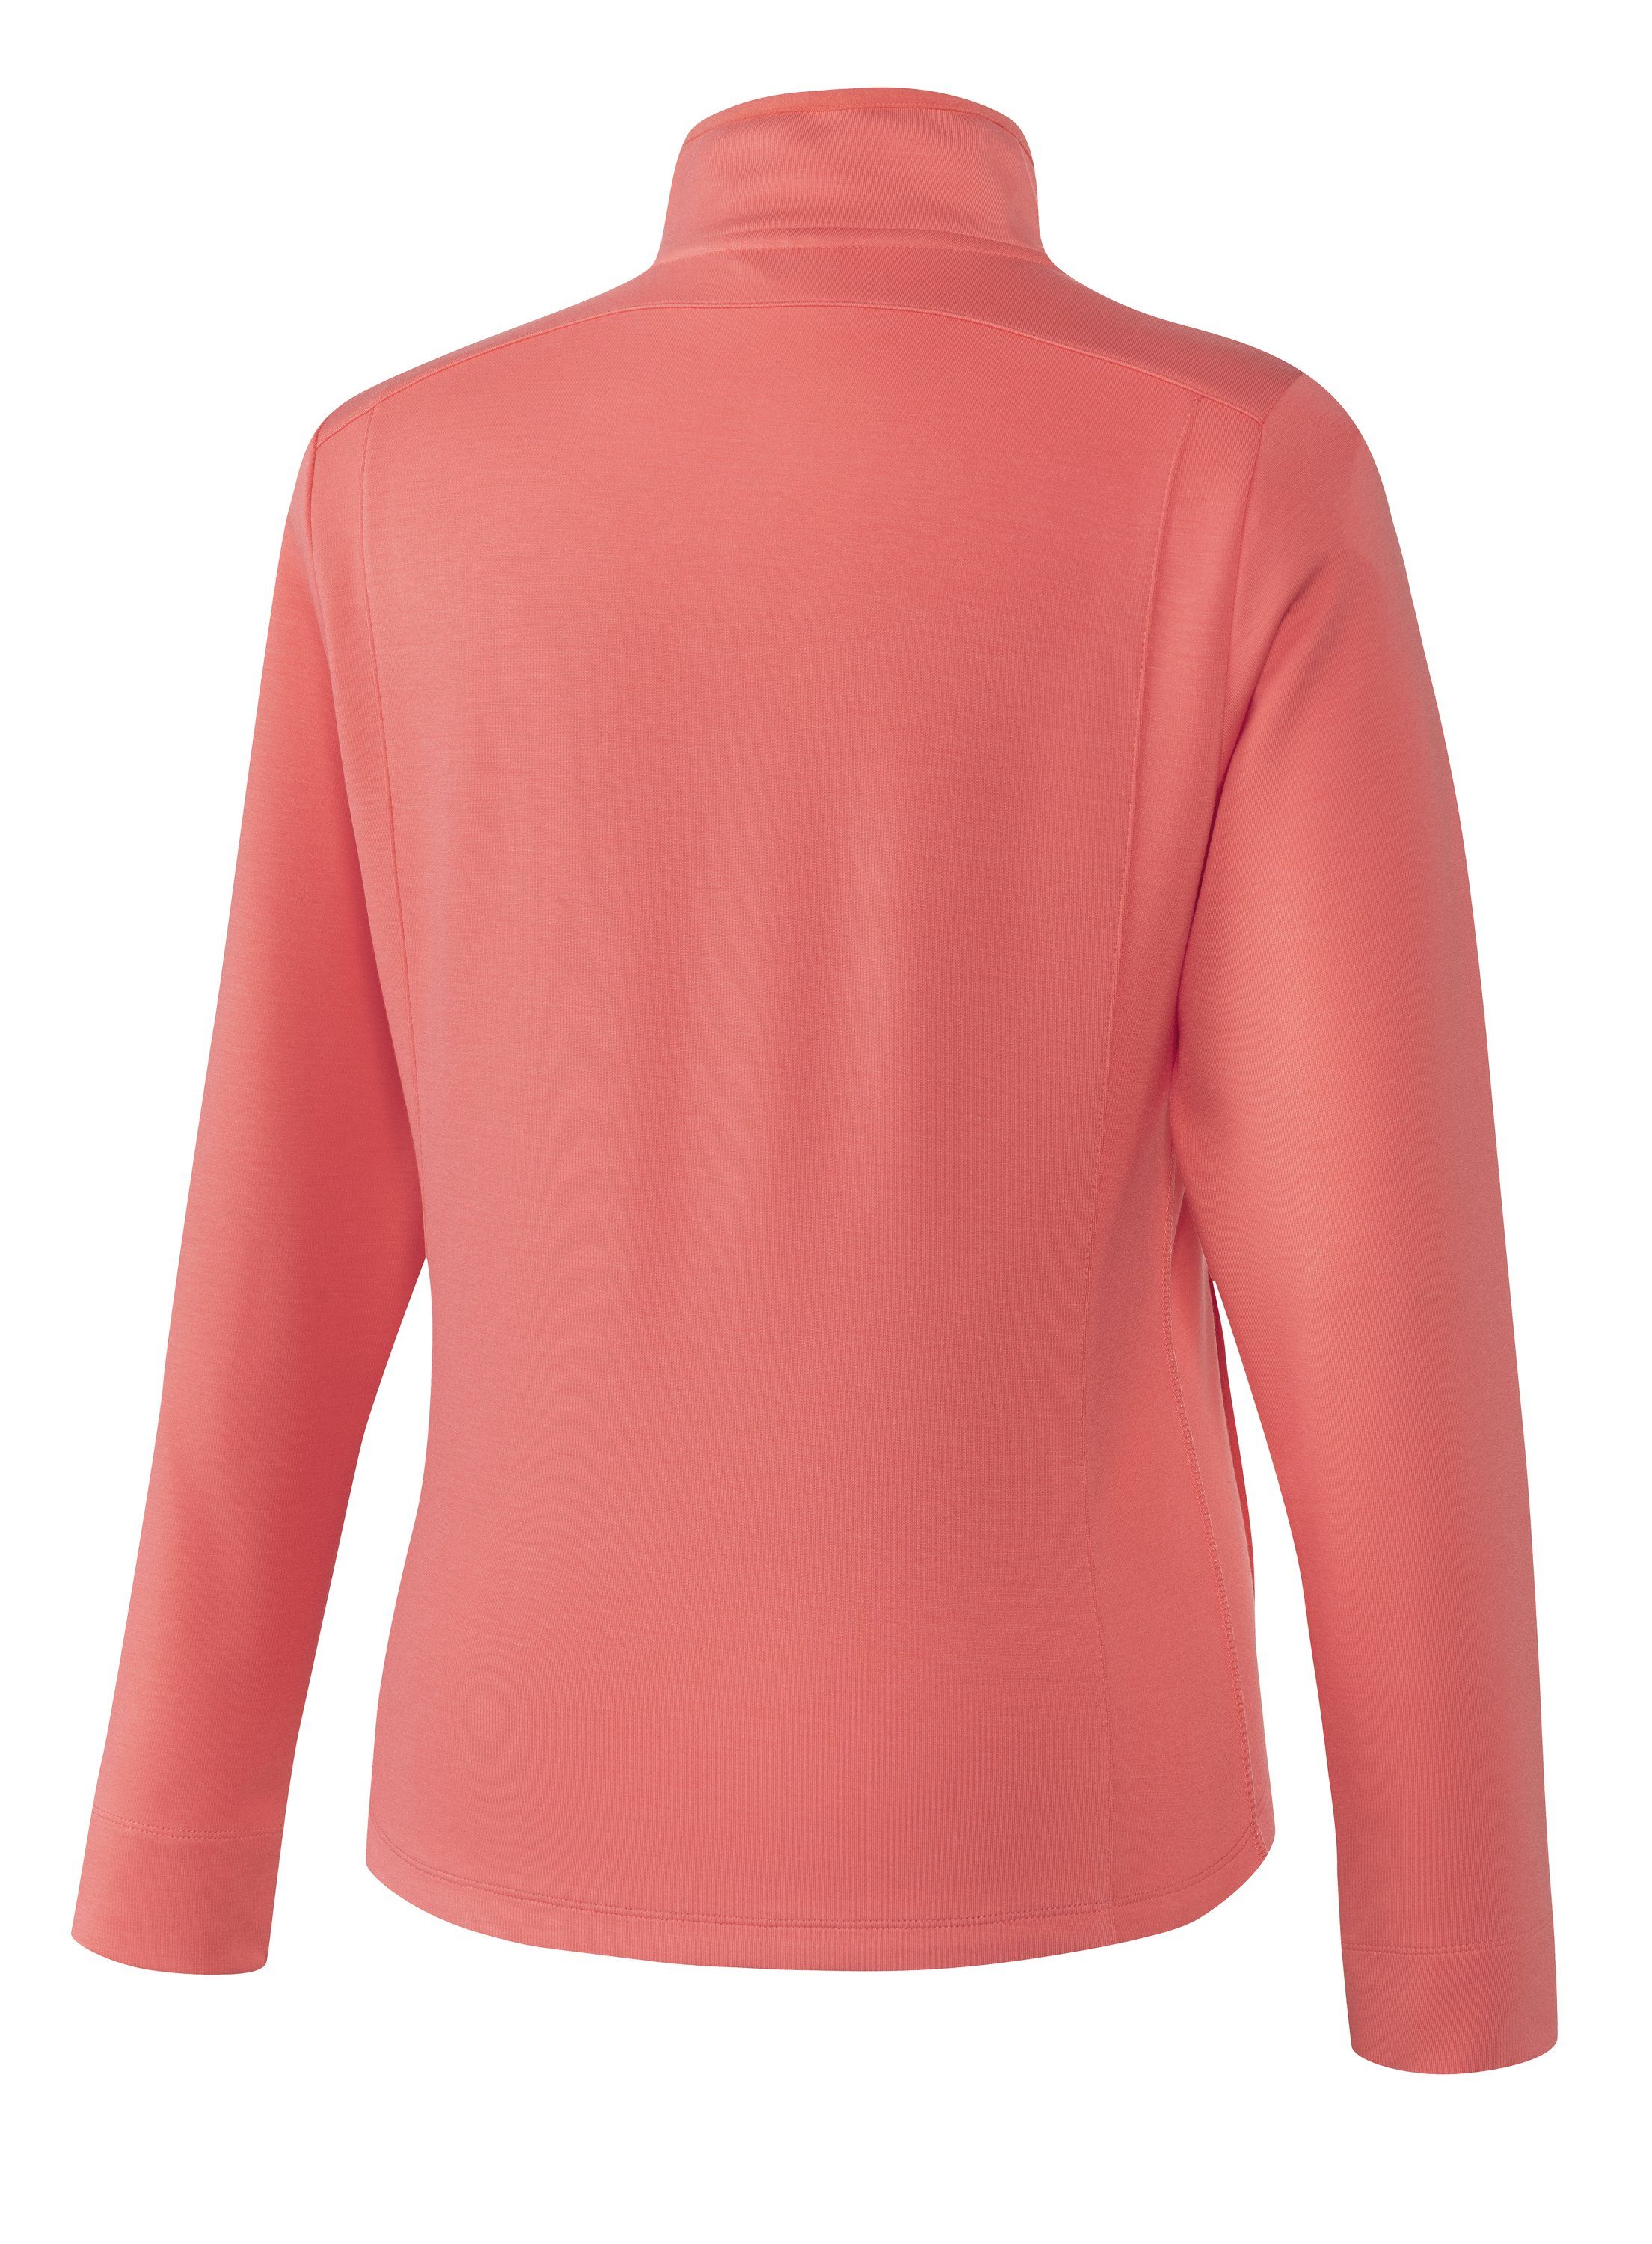 Joy Sportswear Trainingsjacke MALA pink coral Jacke